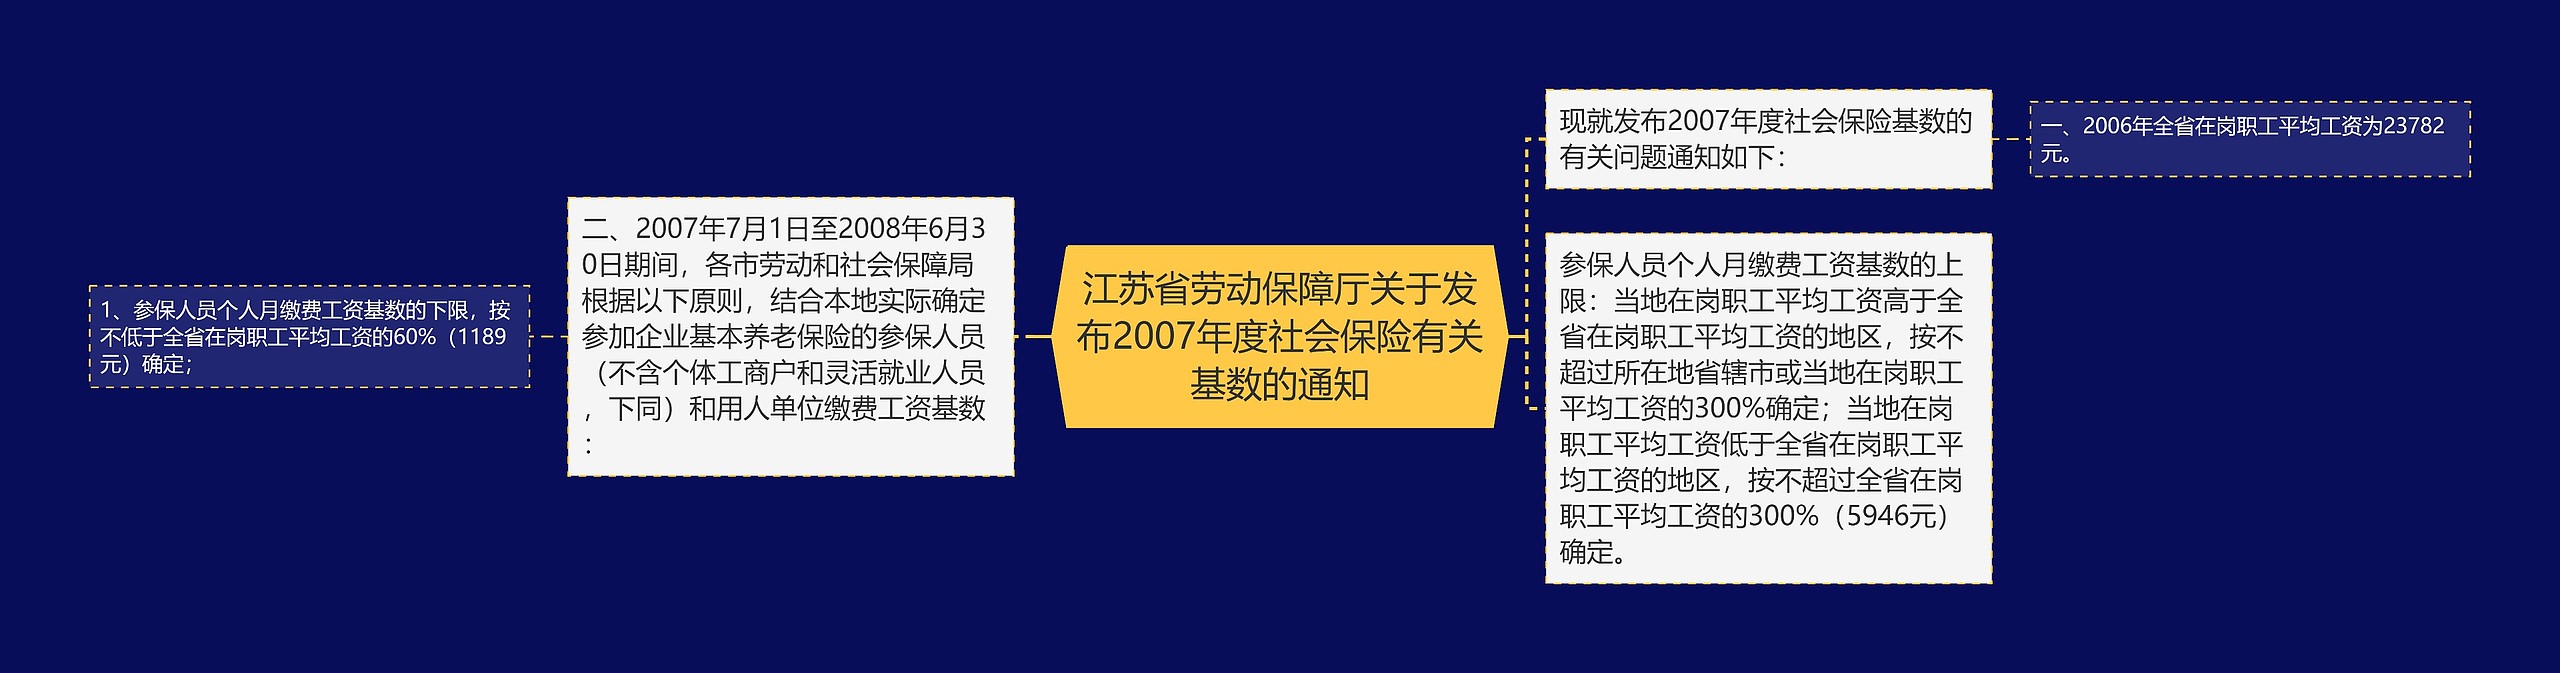 江苏省劳动保障厅关于发布2007年度社会保险有关基数的通知思维导图